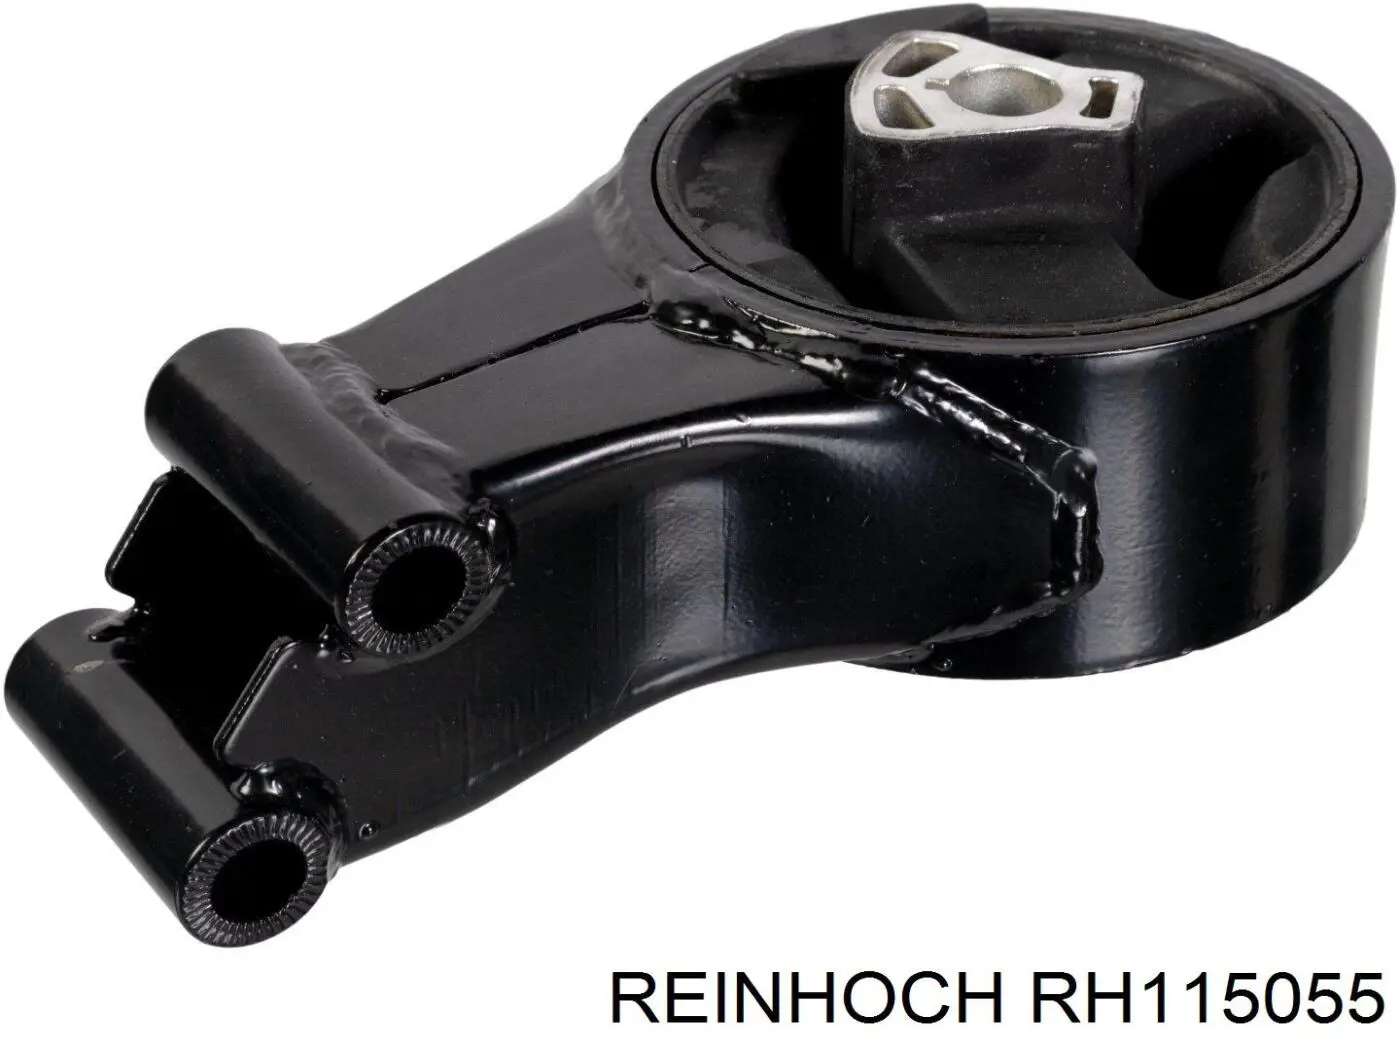 RH115055 Reinhoch coxim (suporte dianteiro de motor)